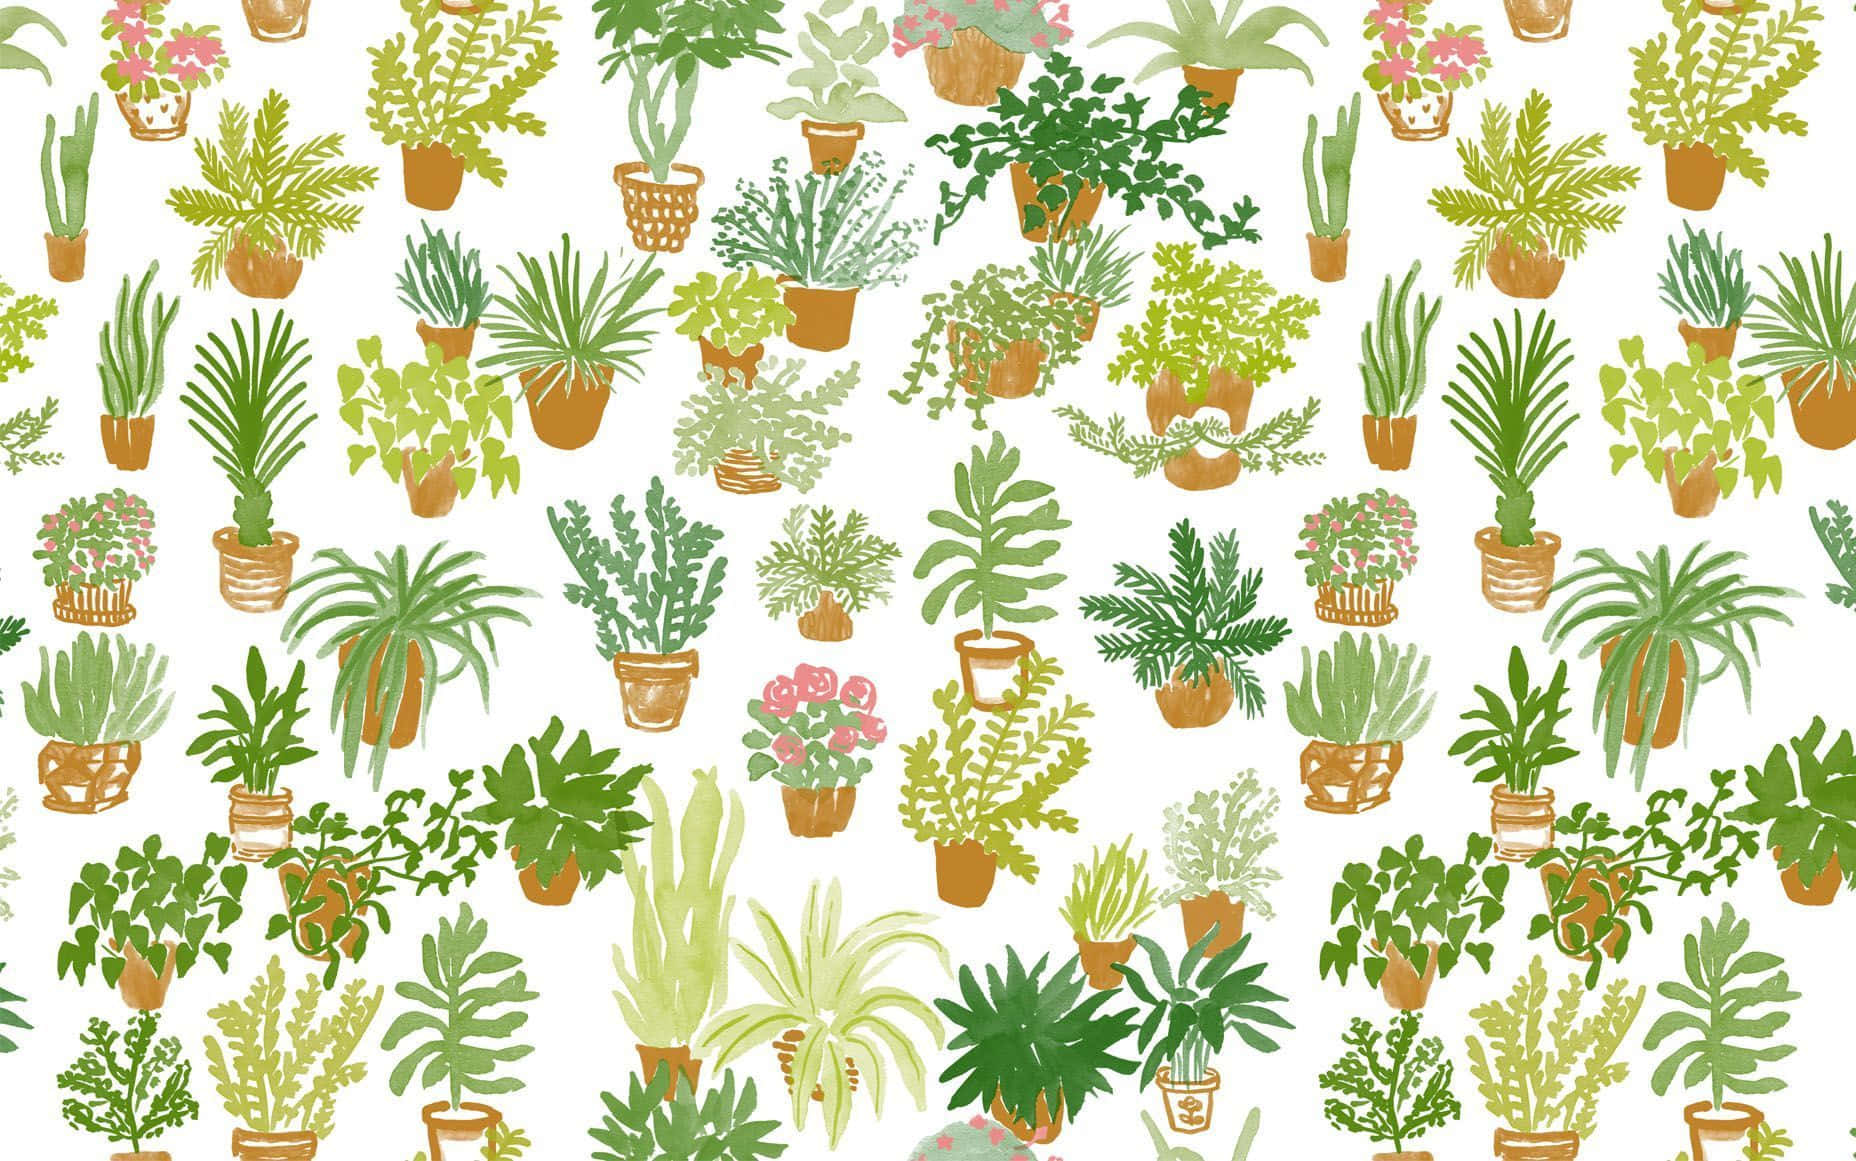 Bringensie Mit Dieser Niedlichen Und Ästhetischen Pflanze Etwas Mehr Farbe Und Leben In Ihre Wohnkultur! Wallpaper